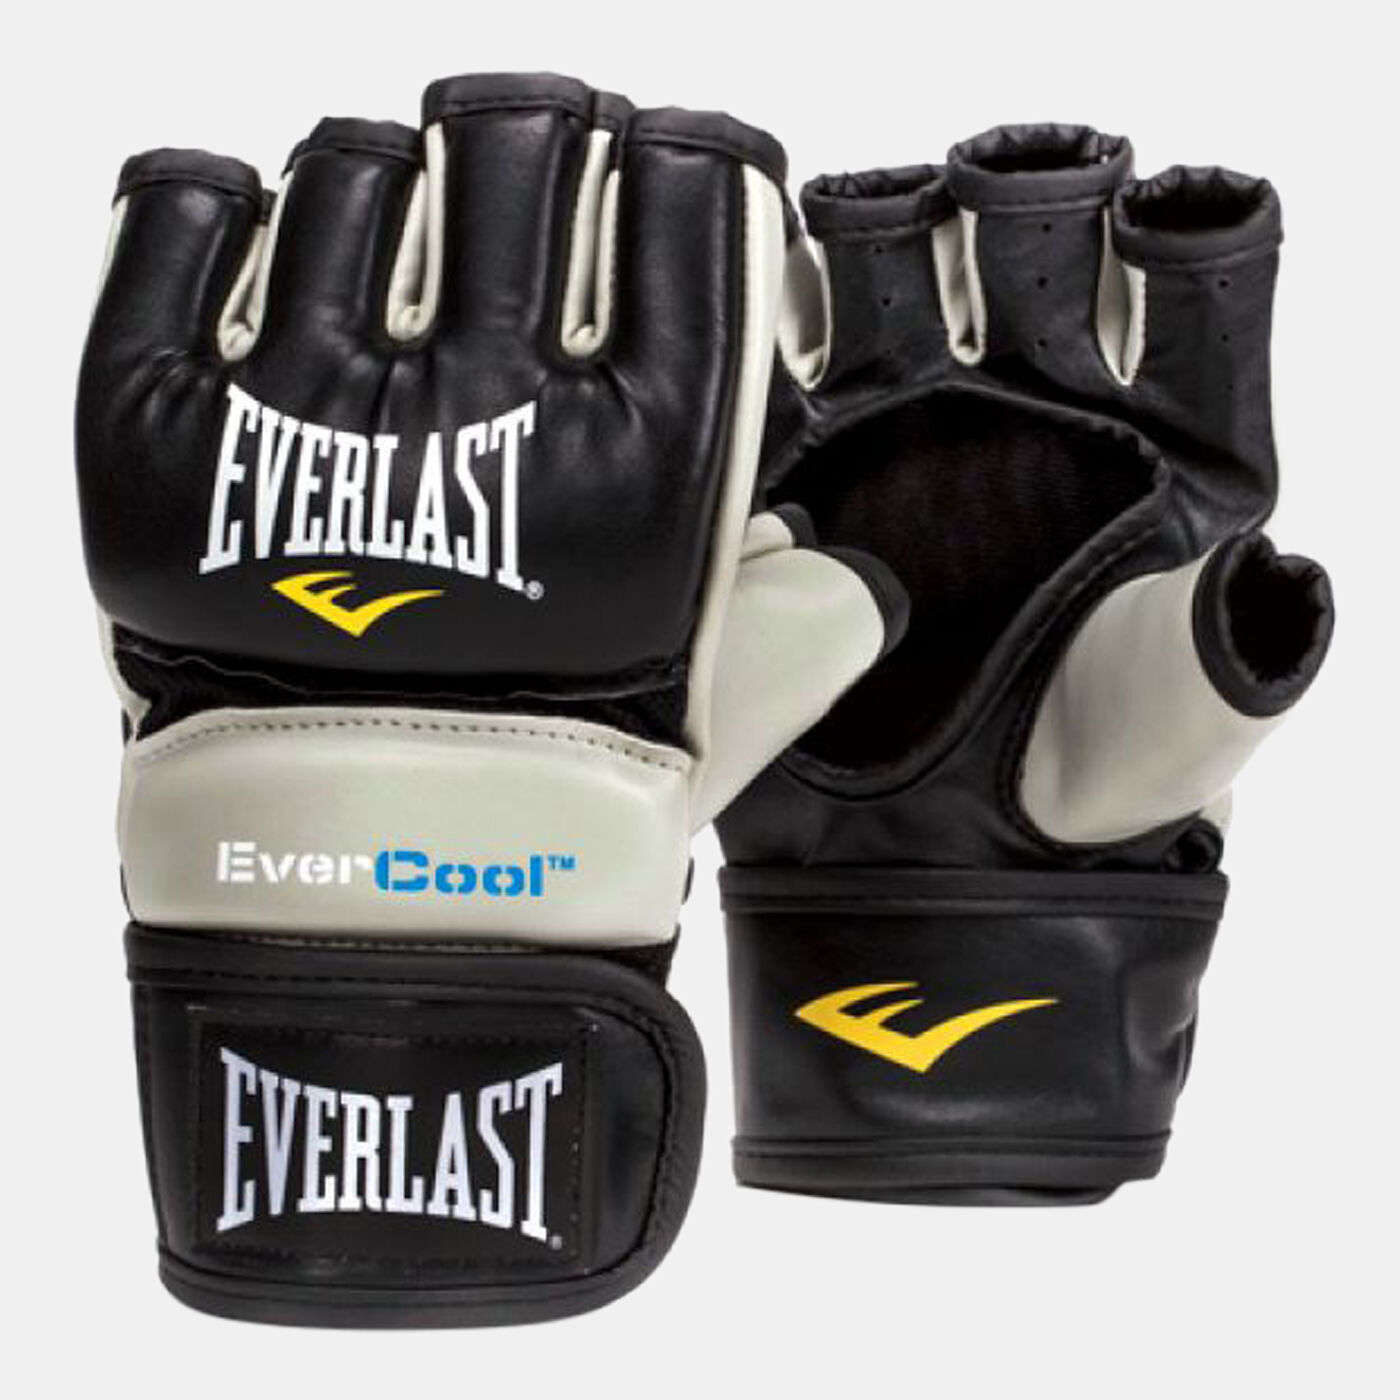 Men's Everstrike Training Gloves - M/L